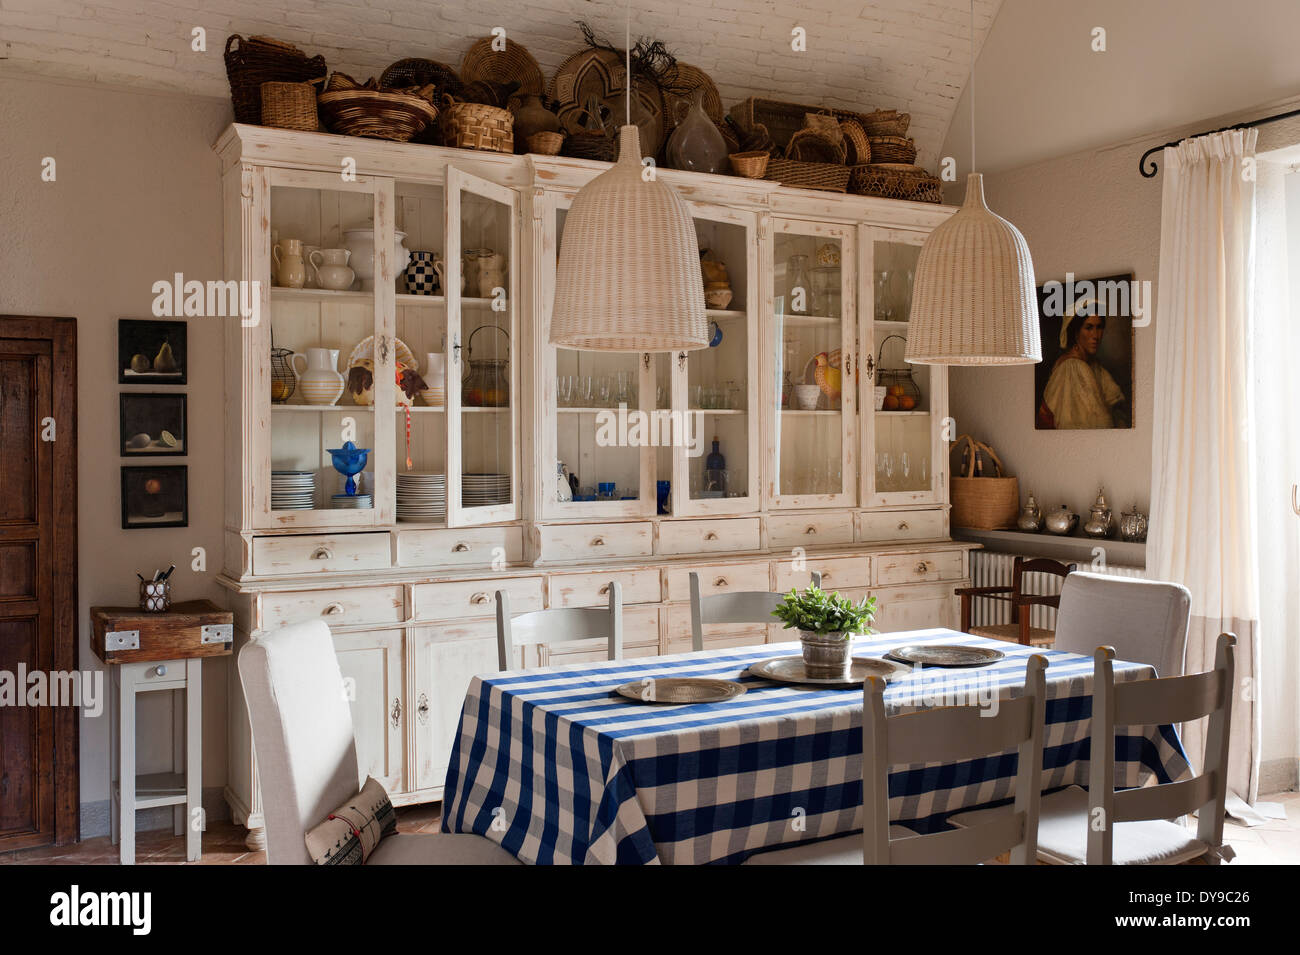 Cuisine rustique avec armoires de style français, vérifié et nappe bleue en osier tissé suspendus Banque D'Images